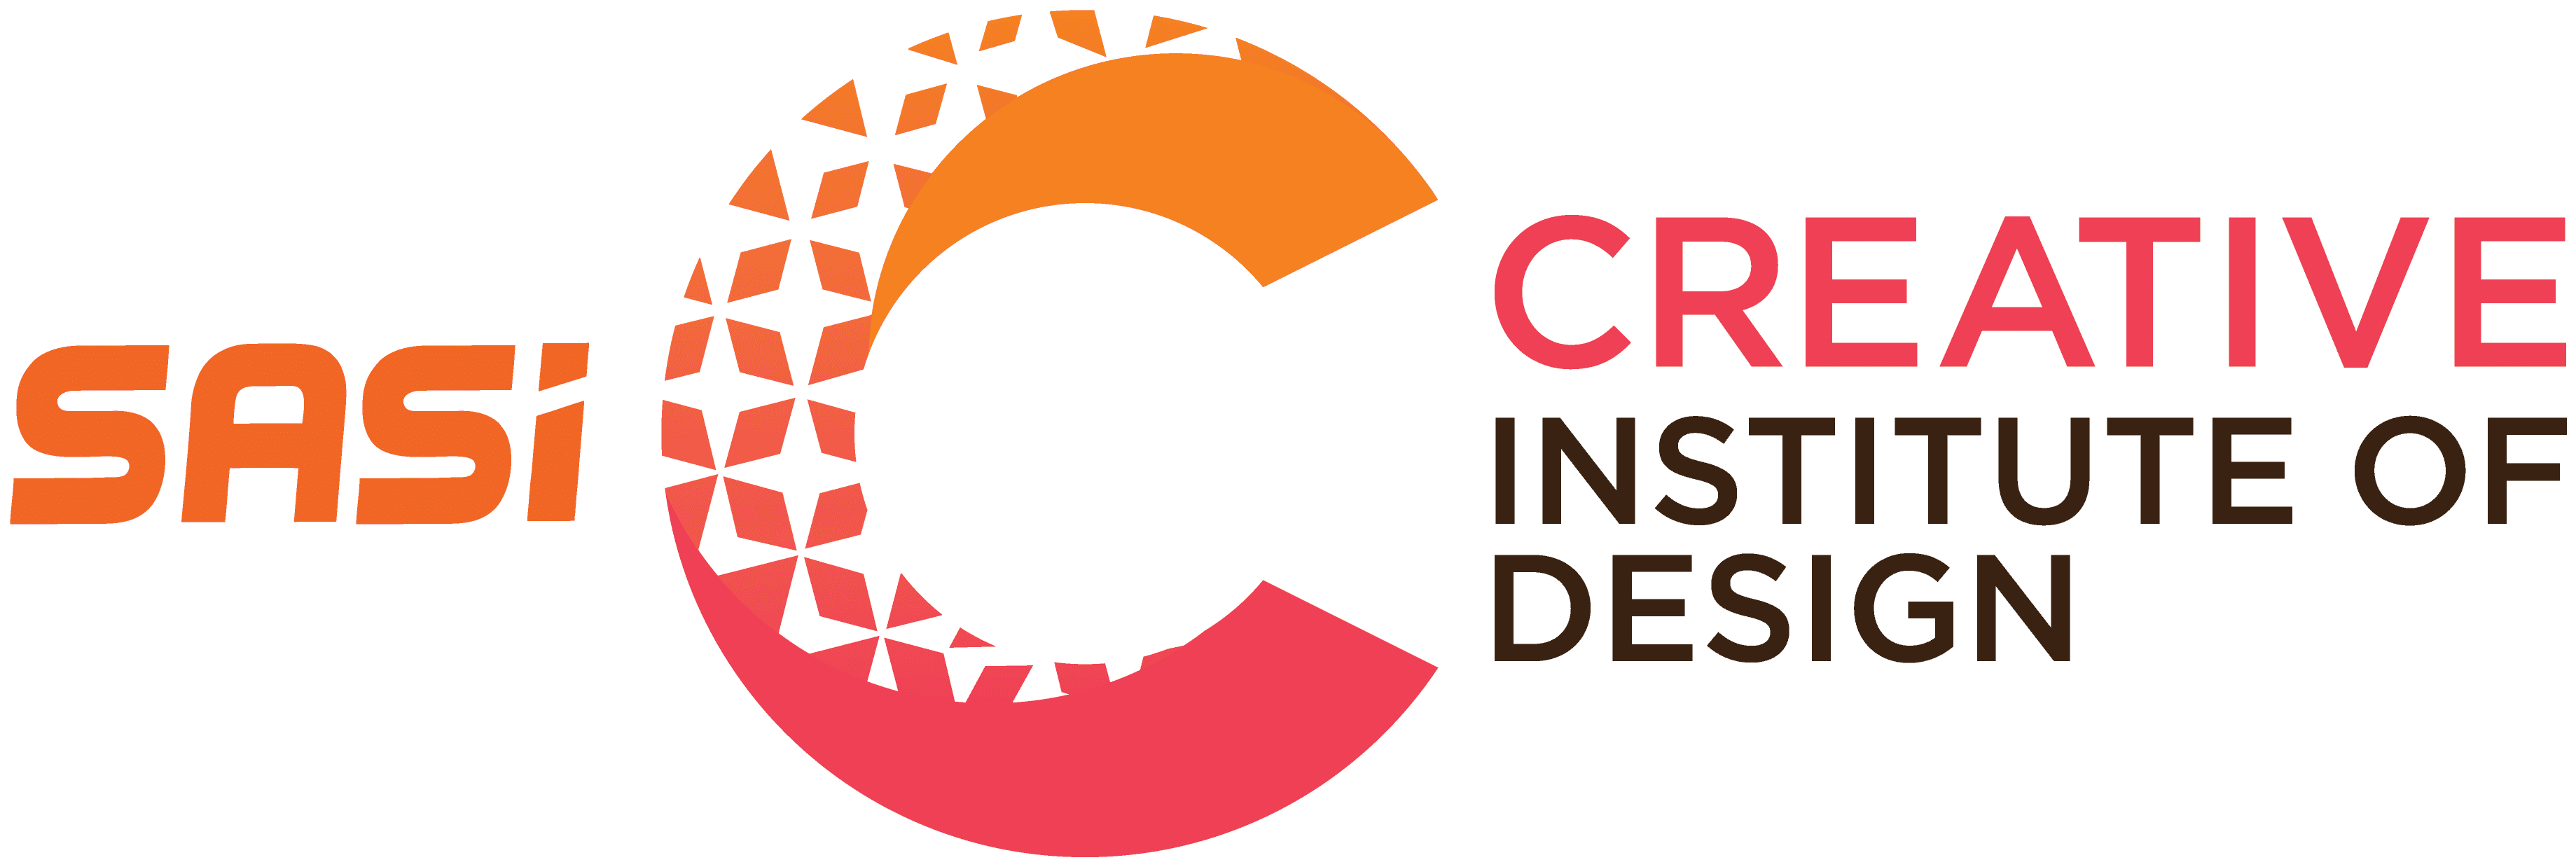 Creative Institute Of Design